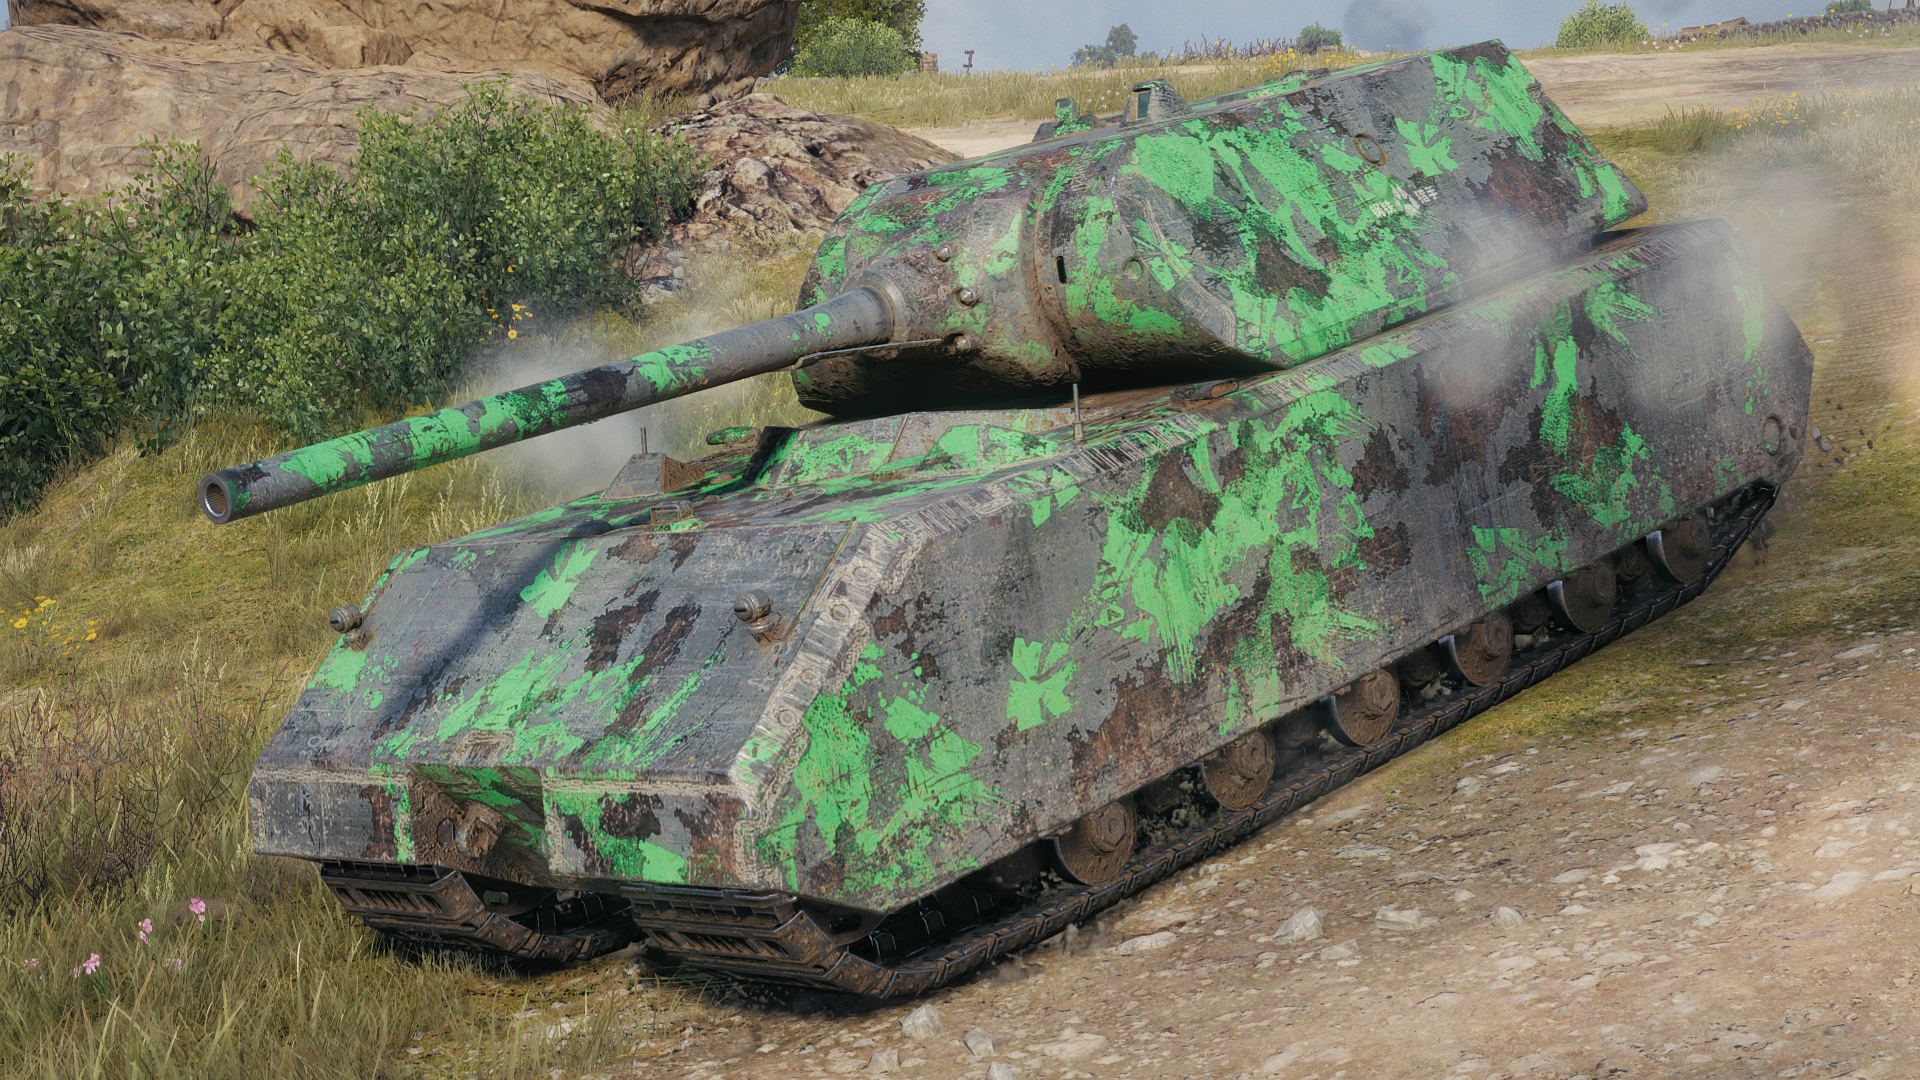 爆改传奇T-54D亮相《坦克世界》2024翡翠岛交易会